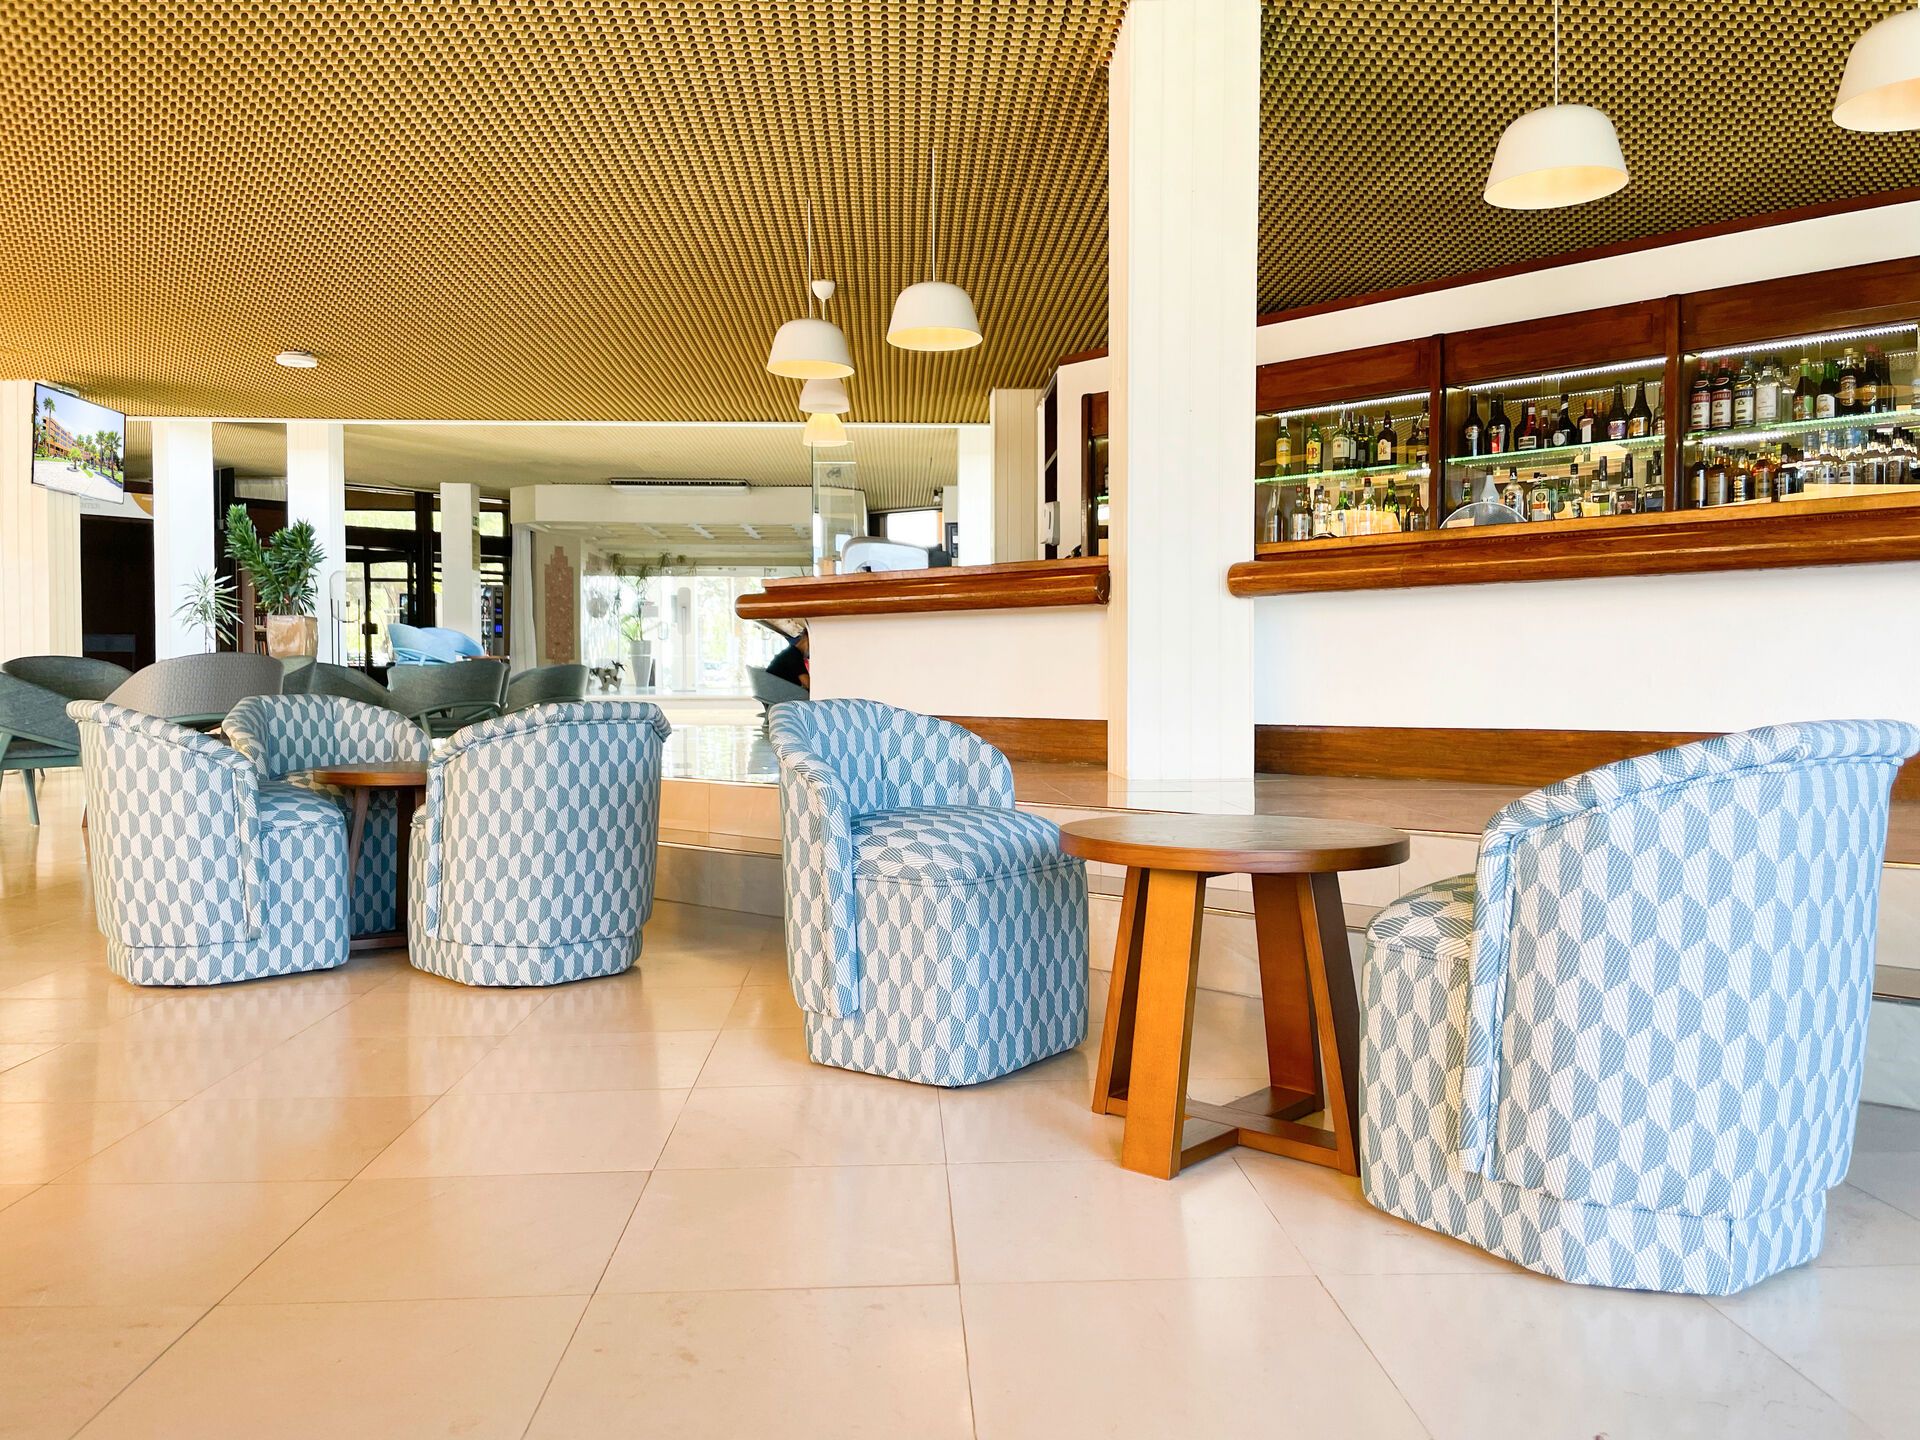 Portugal - Algarve - Faro - Hotel Auramar Beach Resort 3*